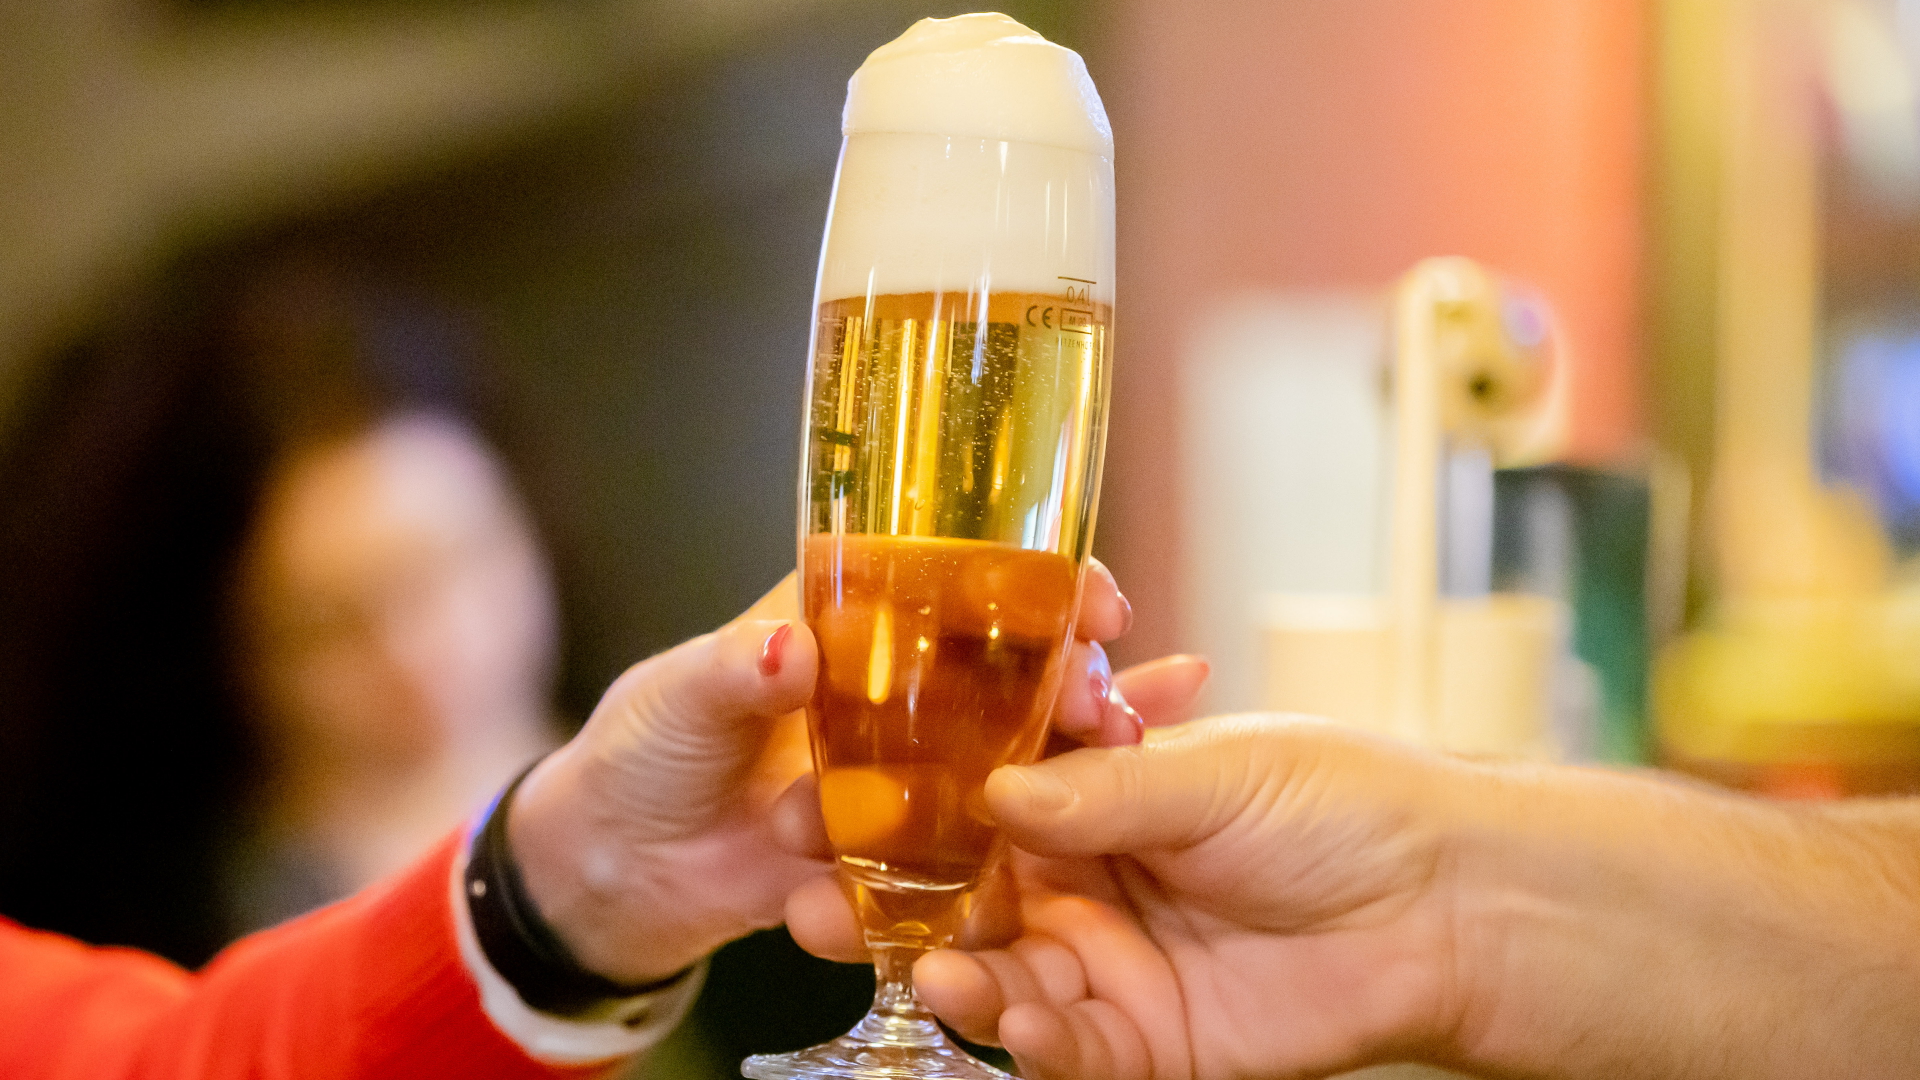 Deutsche Brauereien brauen mehr alkoholfreies als alkoholhaltiges Bier